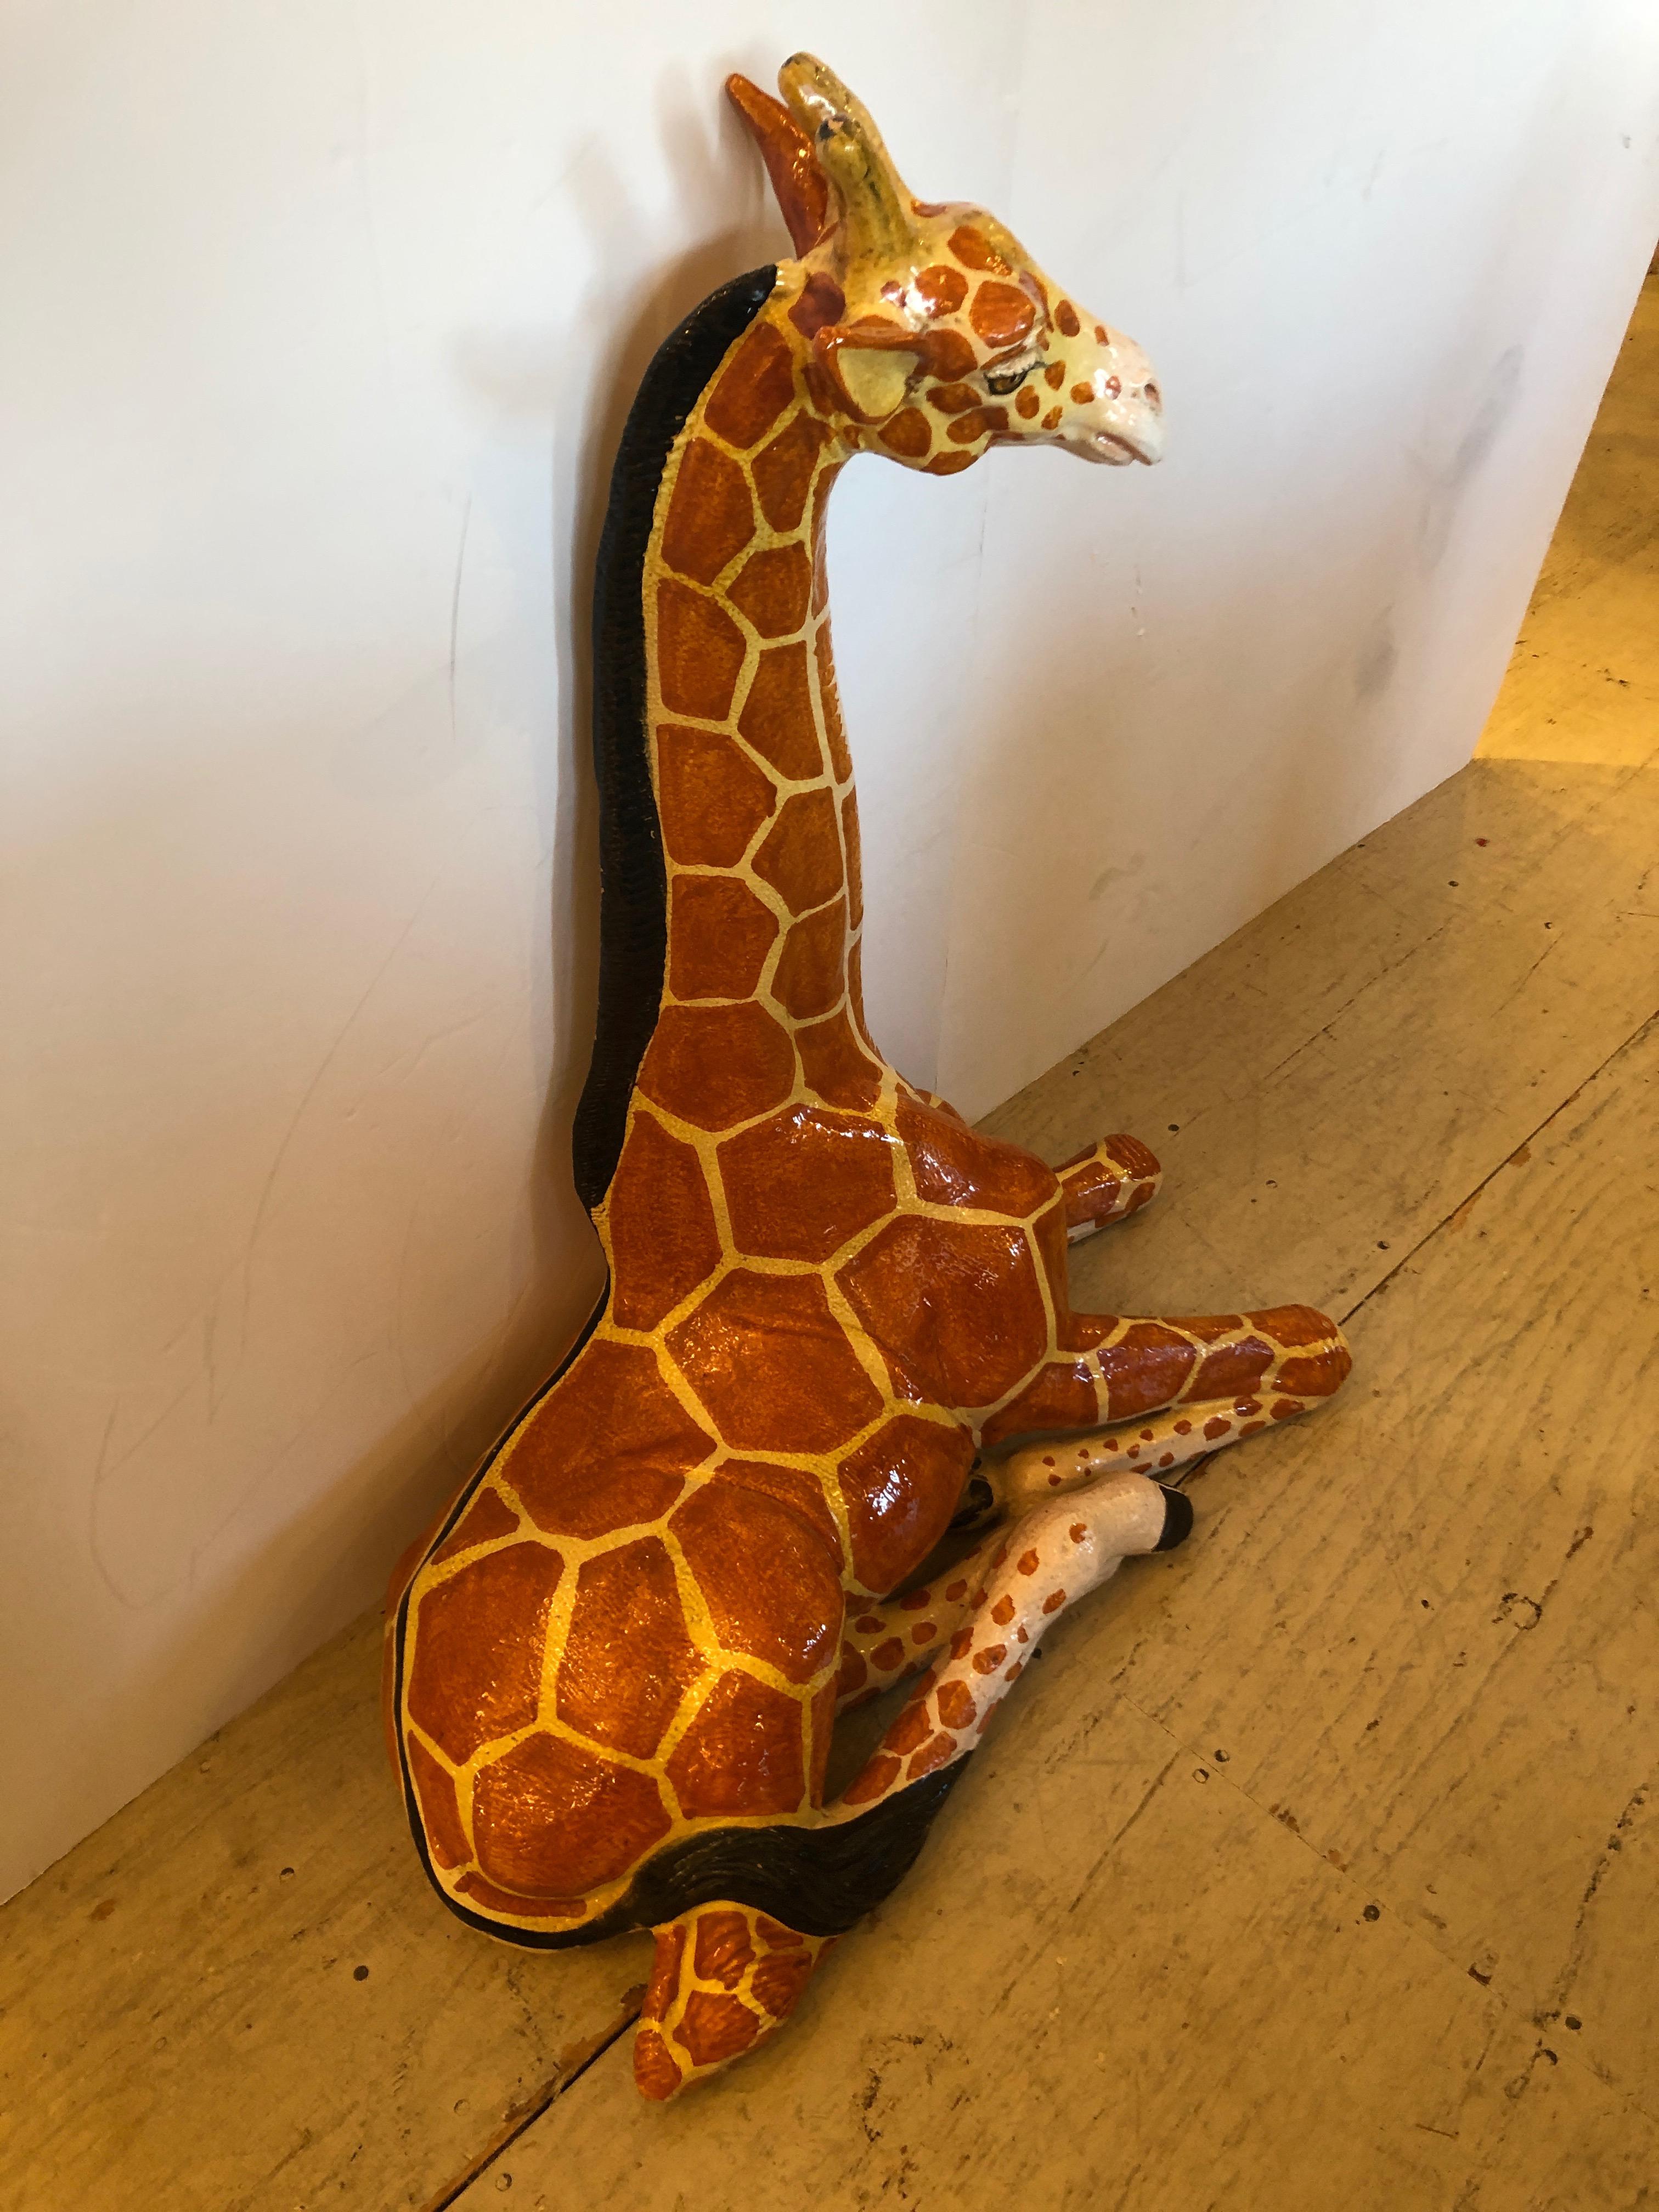 giraffe sculptures for sale